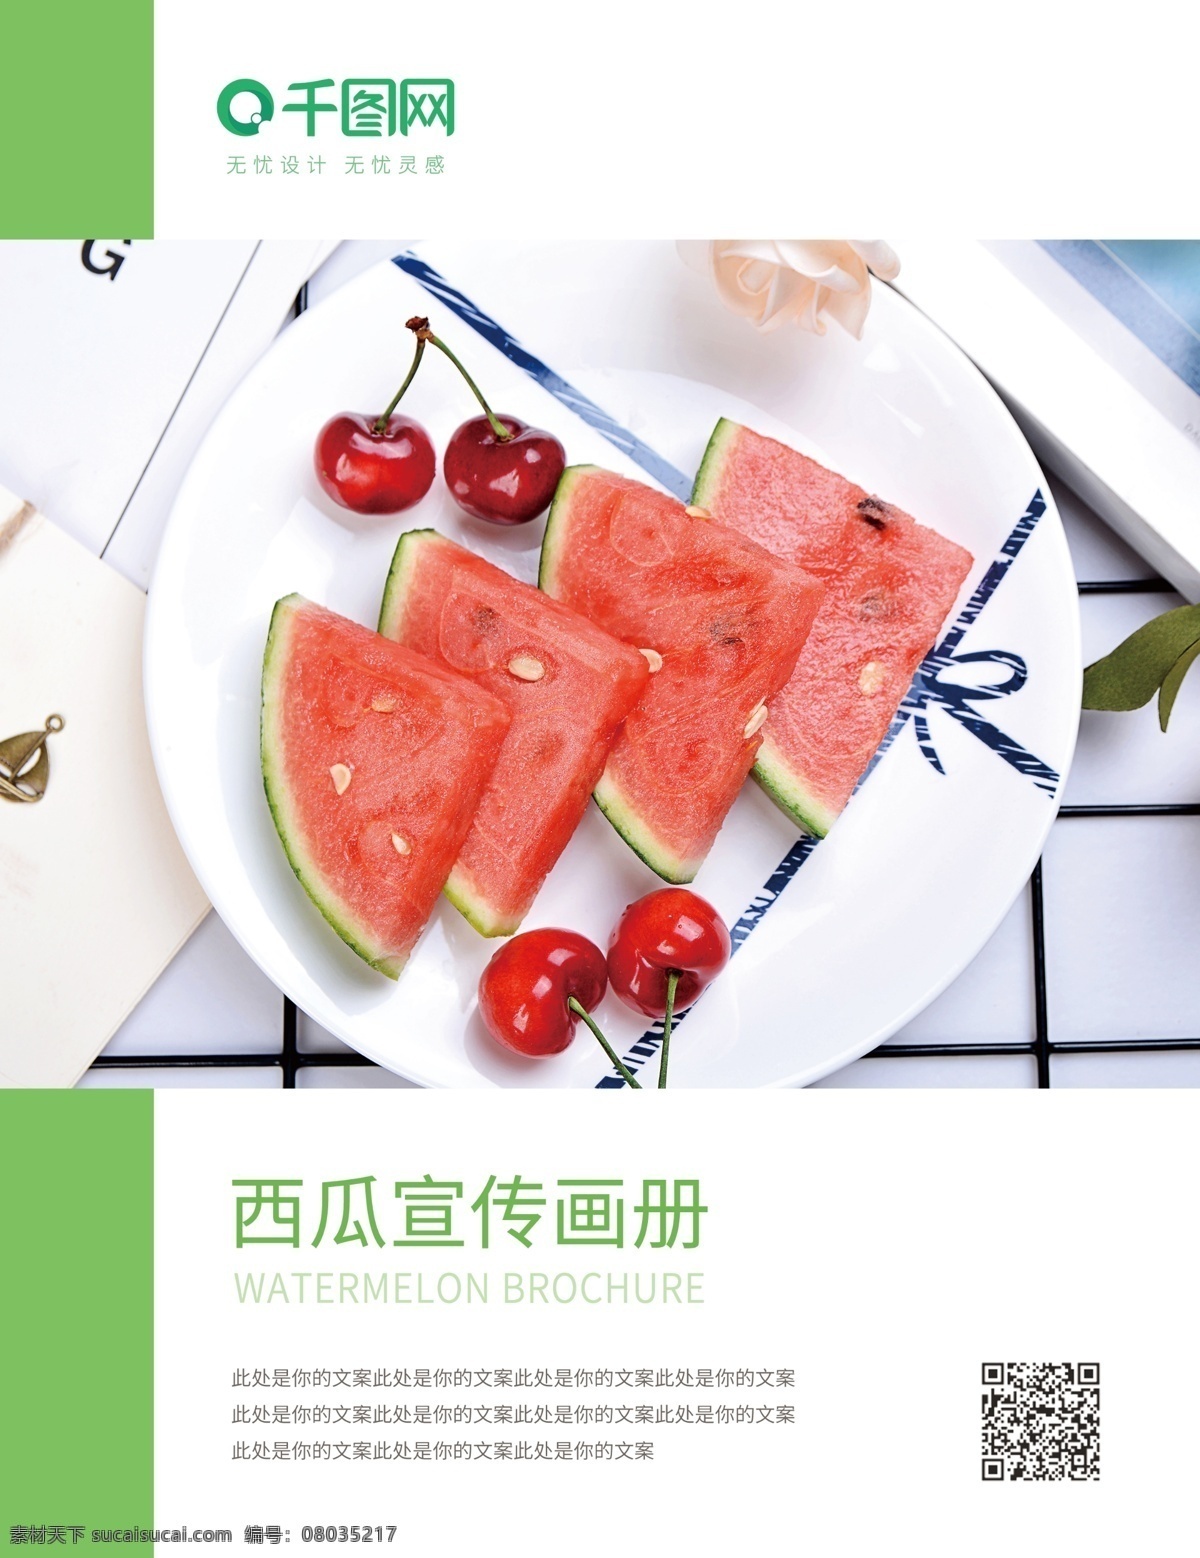 西瓜 食品 宣传 封面 绿色 画册